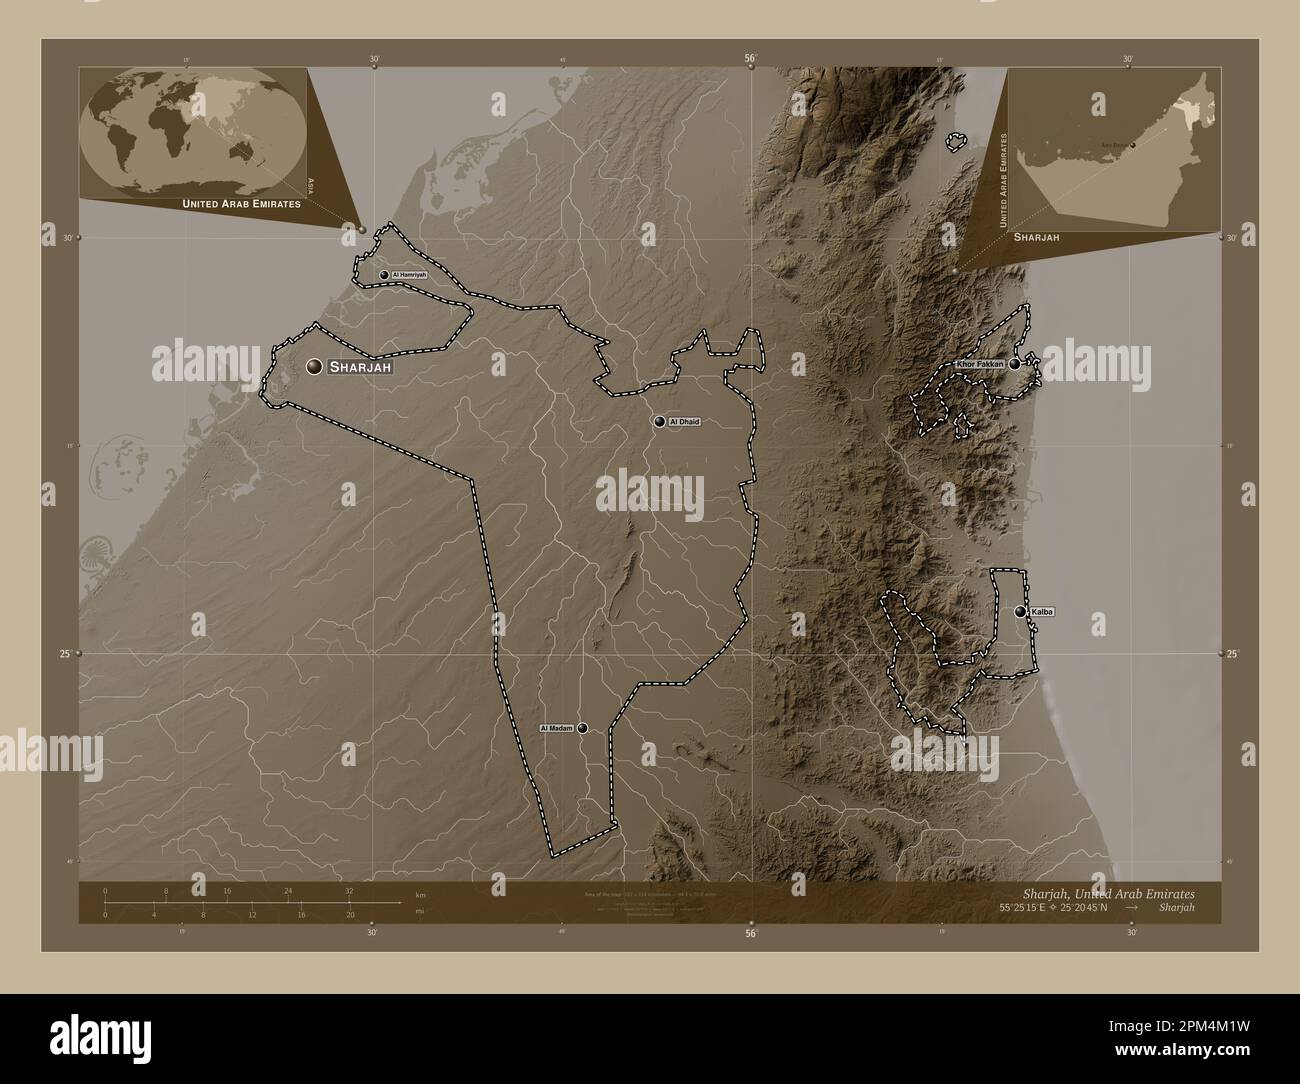 Sharjah, émirat des Émirats arabes Unis. Carte d'altitude colorée en tons sépia avec lacs et rivières. Lieux et noms des principales villes de la regio Banque D'Images